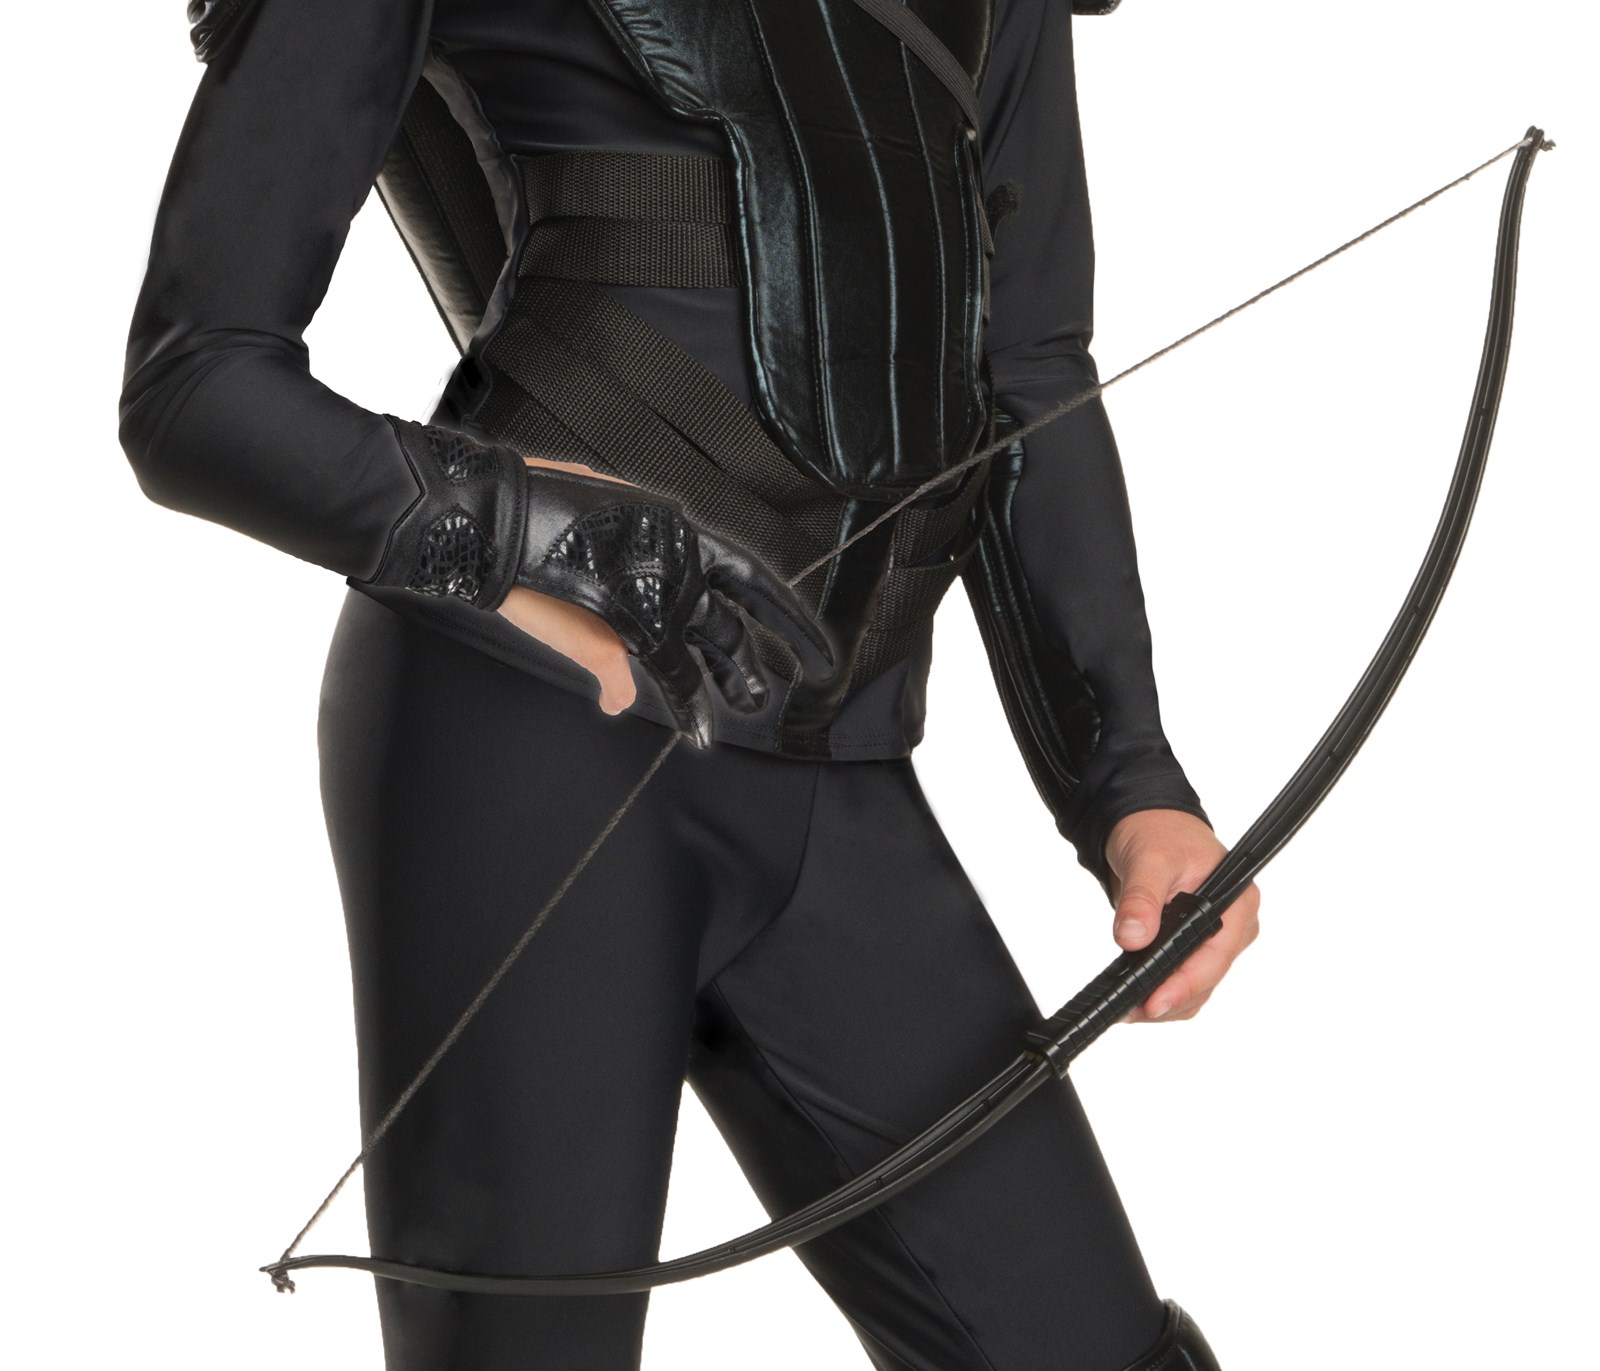 The Hunger Games: Mockingjay Part 1 Katniss Glove For Girls